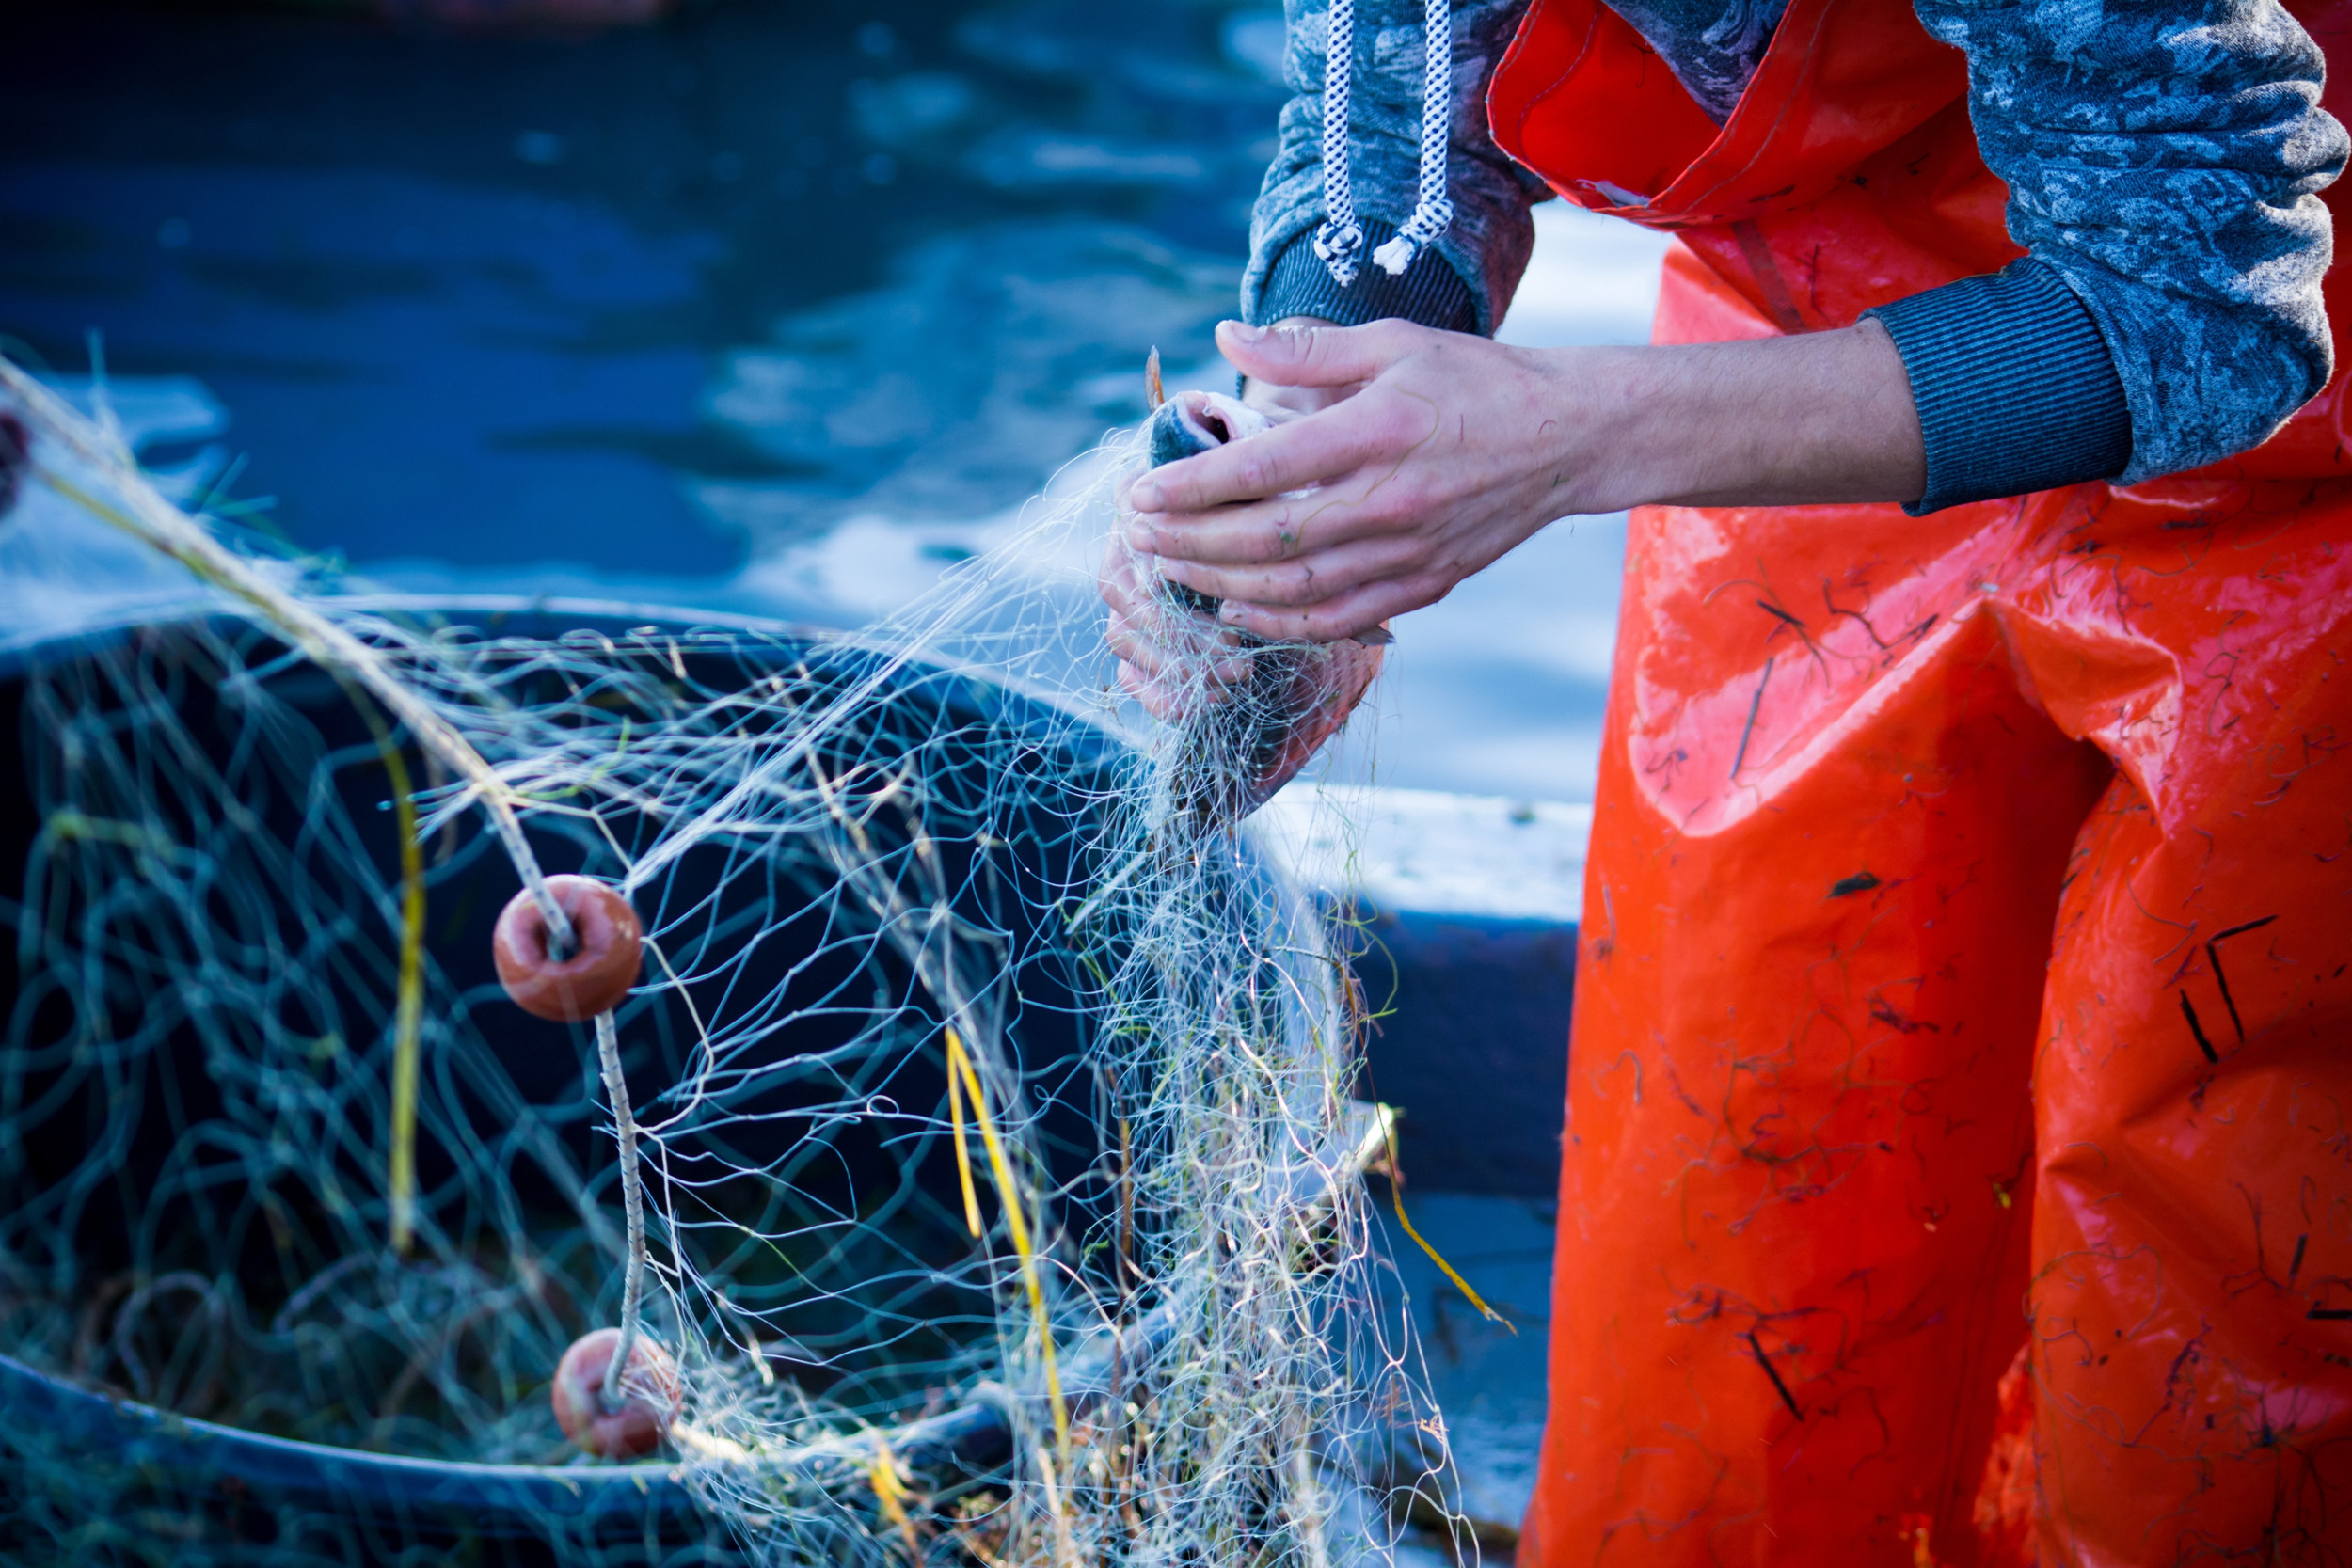 Aufgrund deutlicher Vorteile bei Gewicht, Handling und Haltbarkeit ist Kunststoff in der kommerziellen Fischerei unverzichtbar.